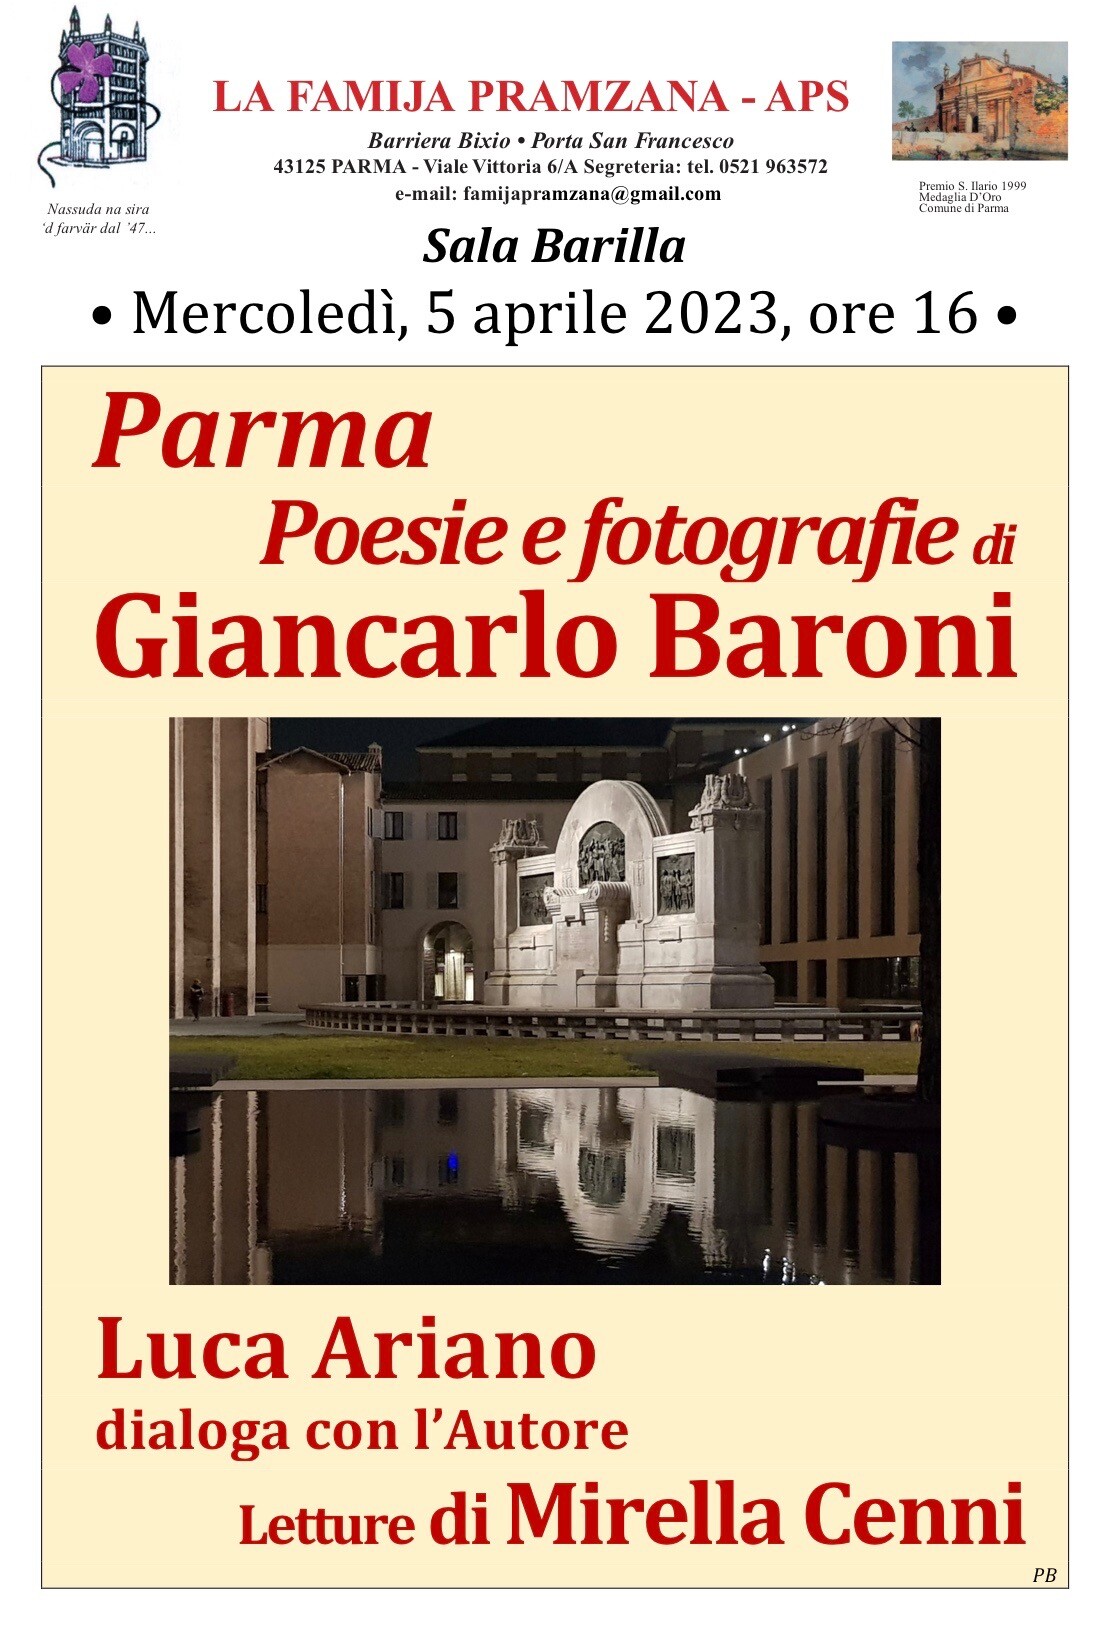 Poesie e fotografie di Giancarlo Baroni alla Famija Pramzana